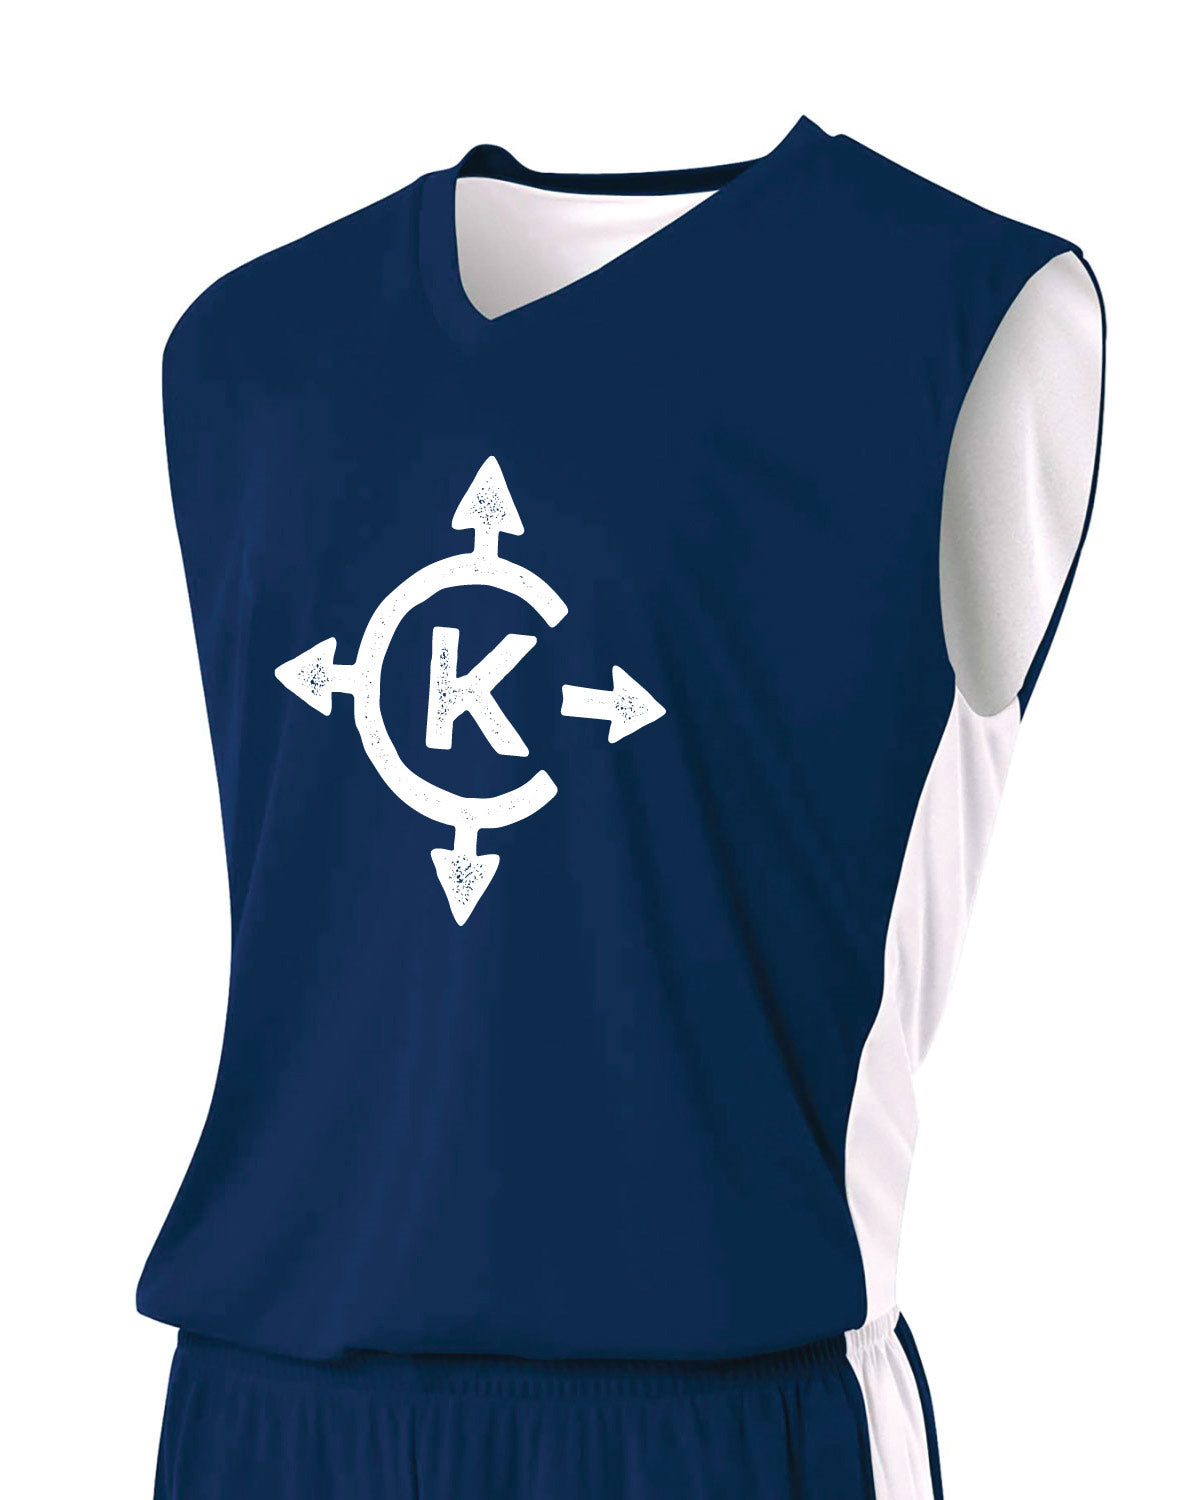 REQUIRED: Camp Kawaga Reversible Basketball Jersey